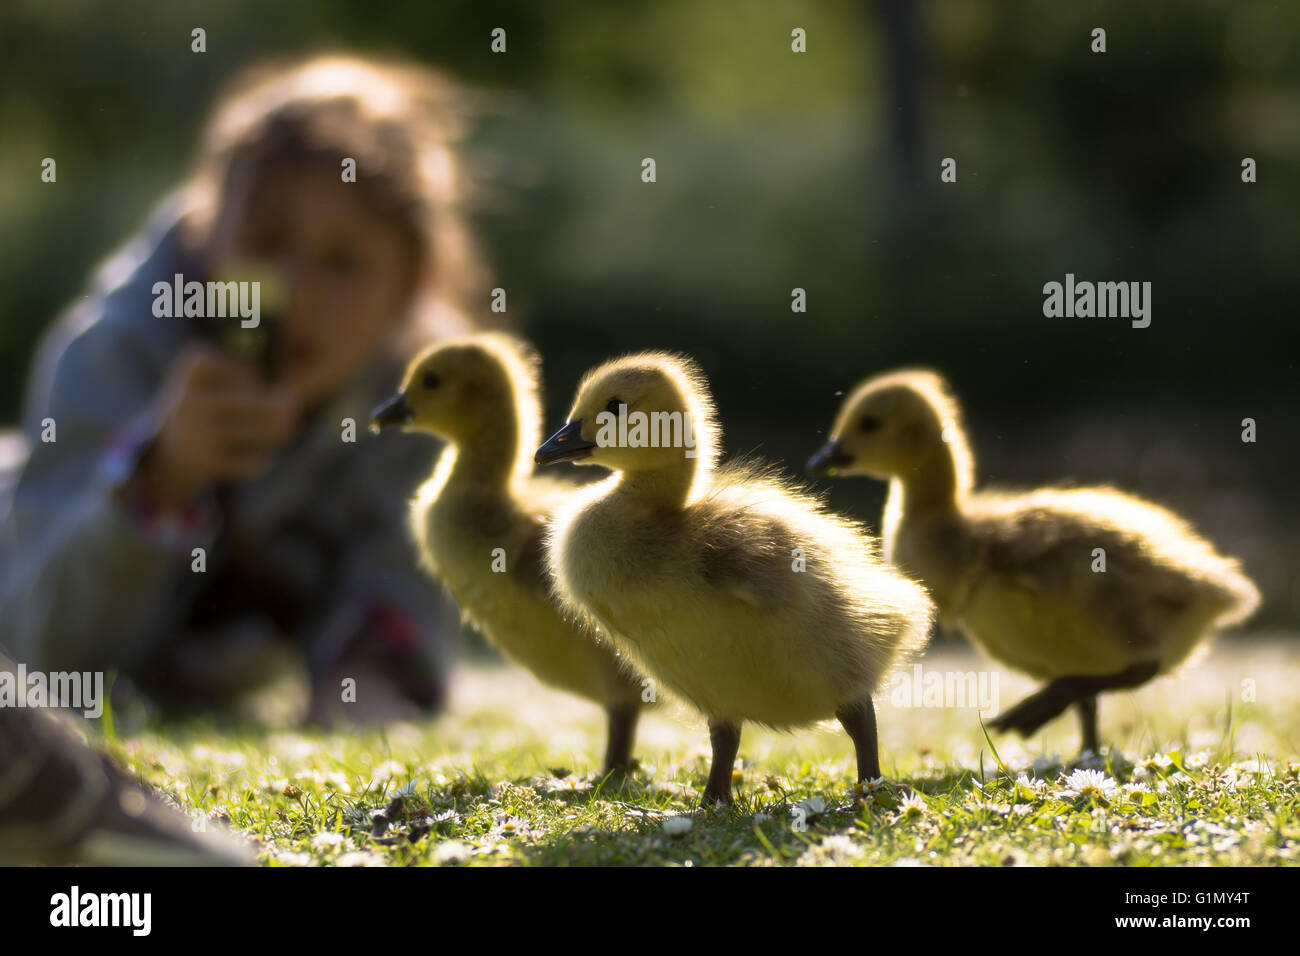 Canada goose (Branta canadensis) goslings fotografato giovani pulcini in primo piano con il bambino usando il telefono per scattare la foto Foto Stock